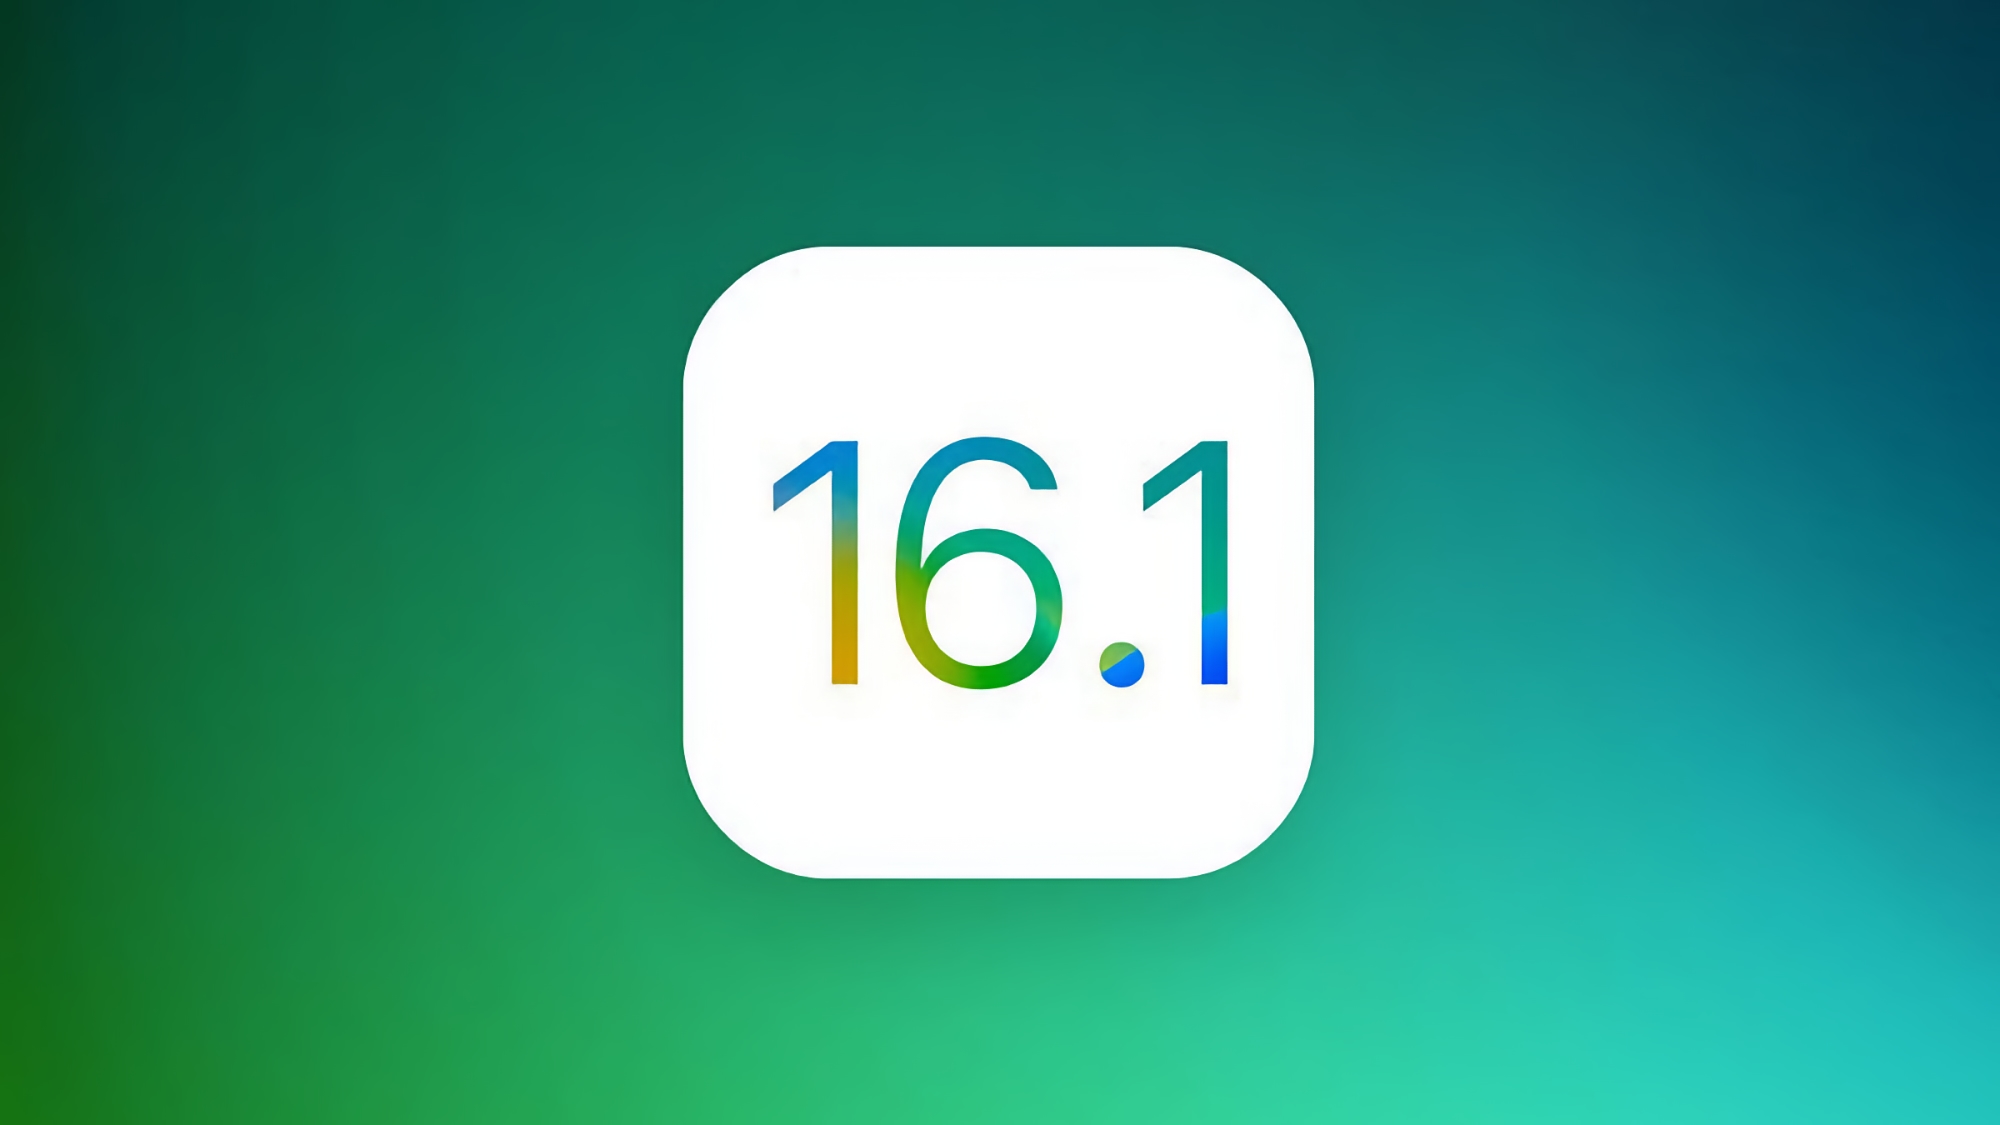 Nicht nur iPadOS 16.1 und macOS Ventura: Apple wird am 24. Oktober eine weitere stabile Version von iOS 16.1 enthüllen